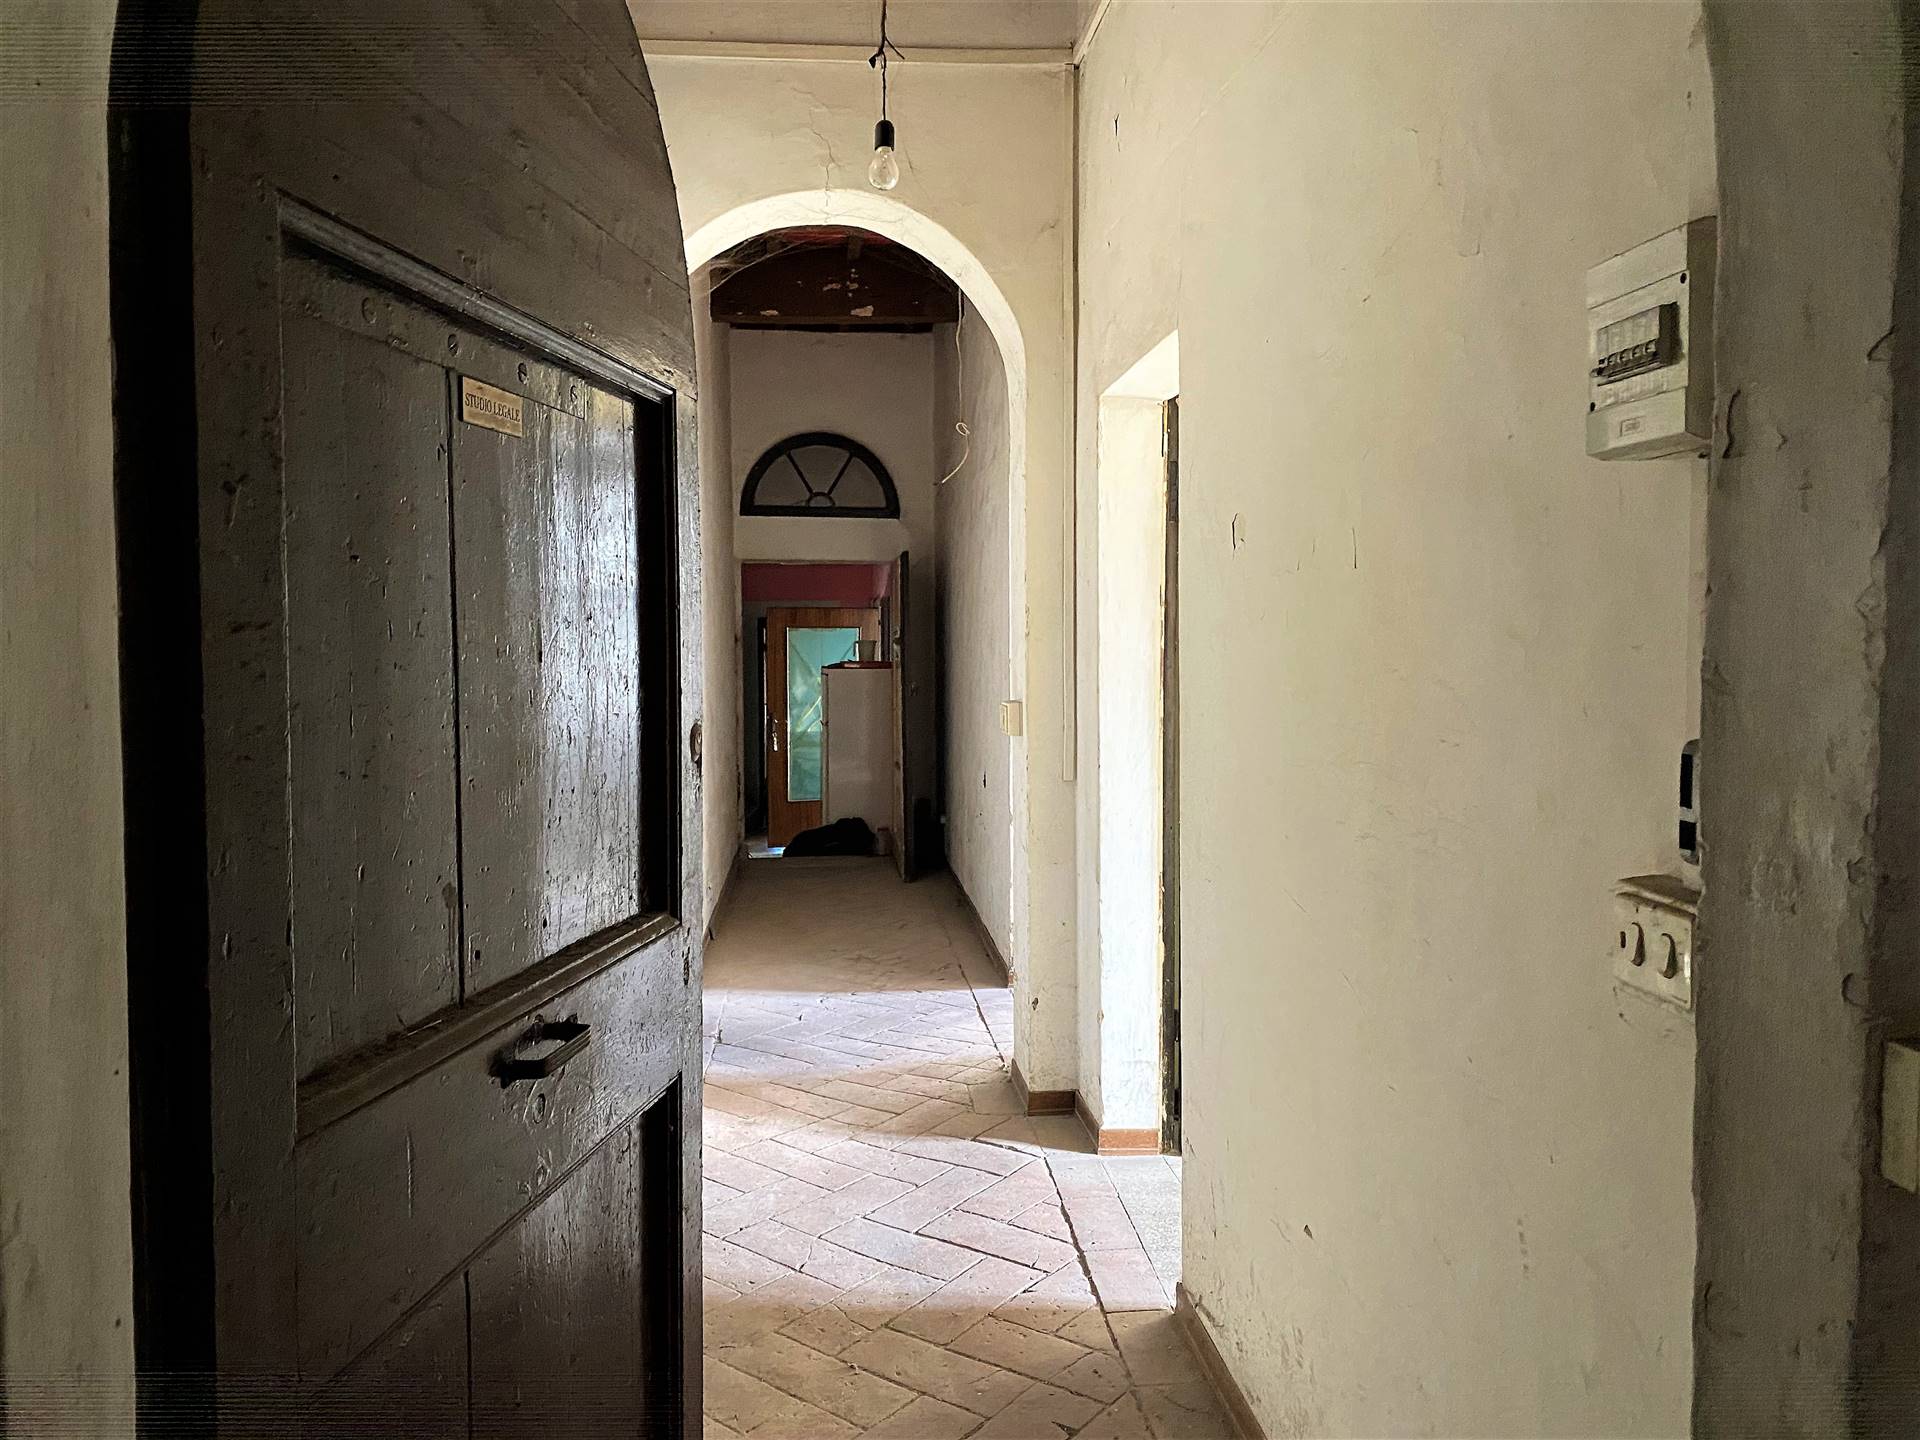 Occasione: Monteroni d'Arbia in Via Roma, in posizione centrale, appartamento situato al primo piano di un antico palazzo ed è composto da un ingresso, disimpegno, 2 camere, soggiorno e cucina e 